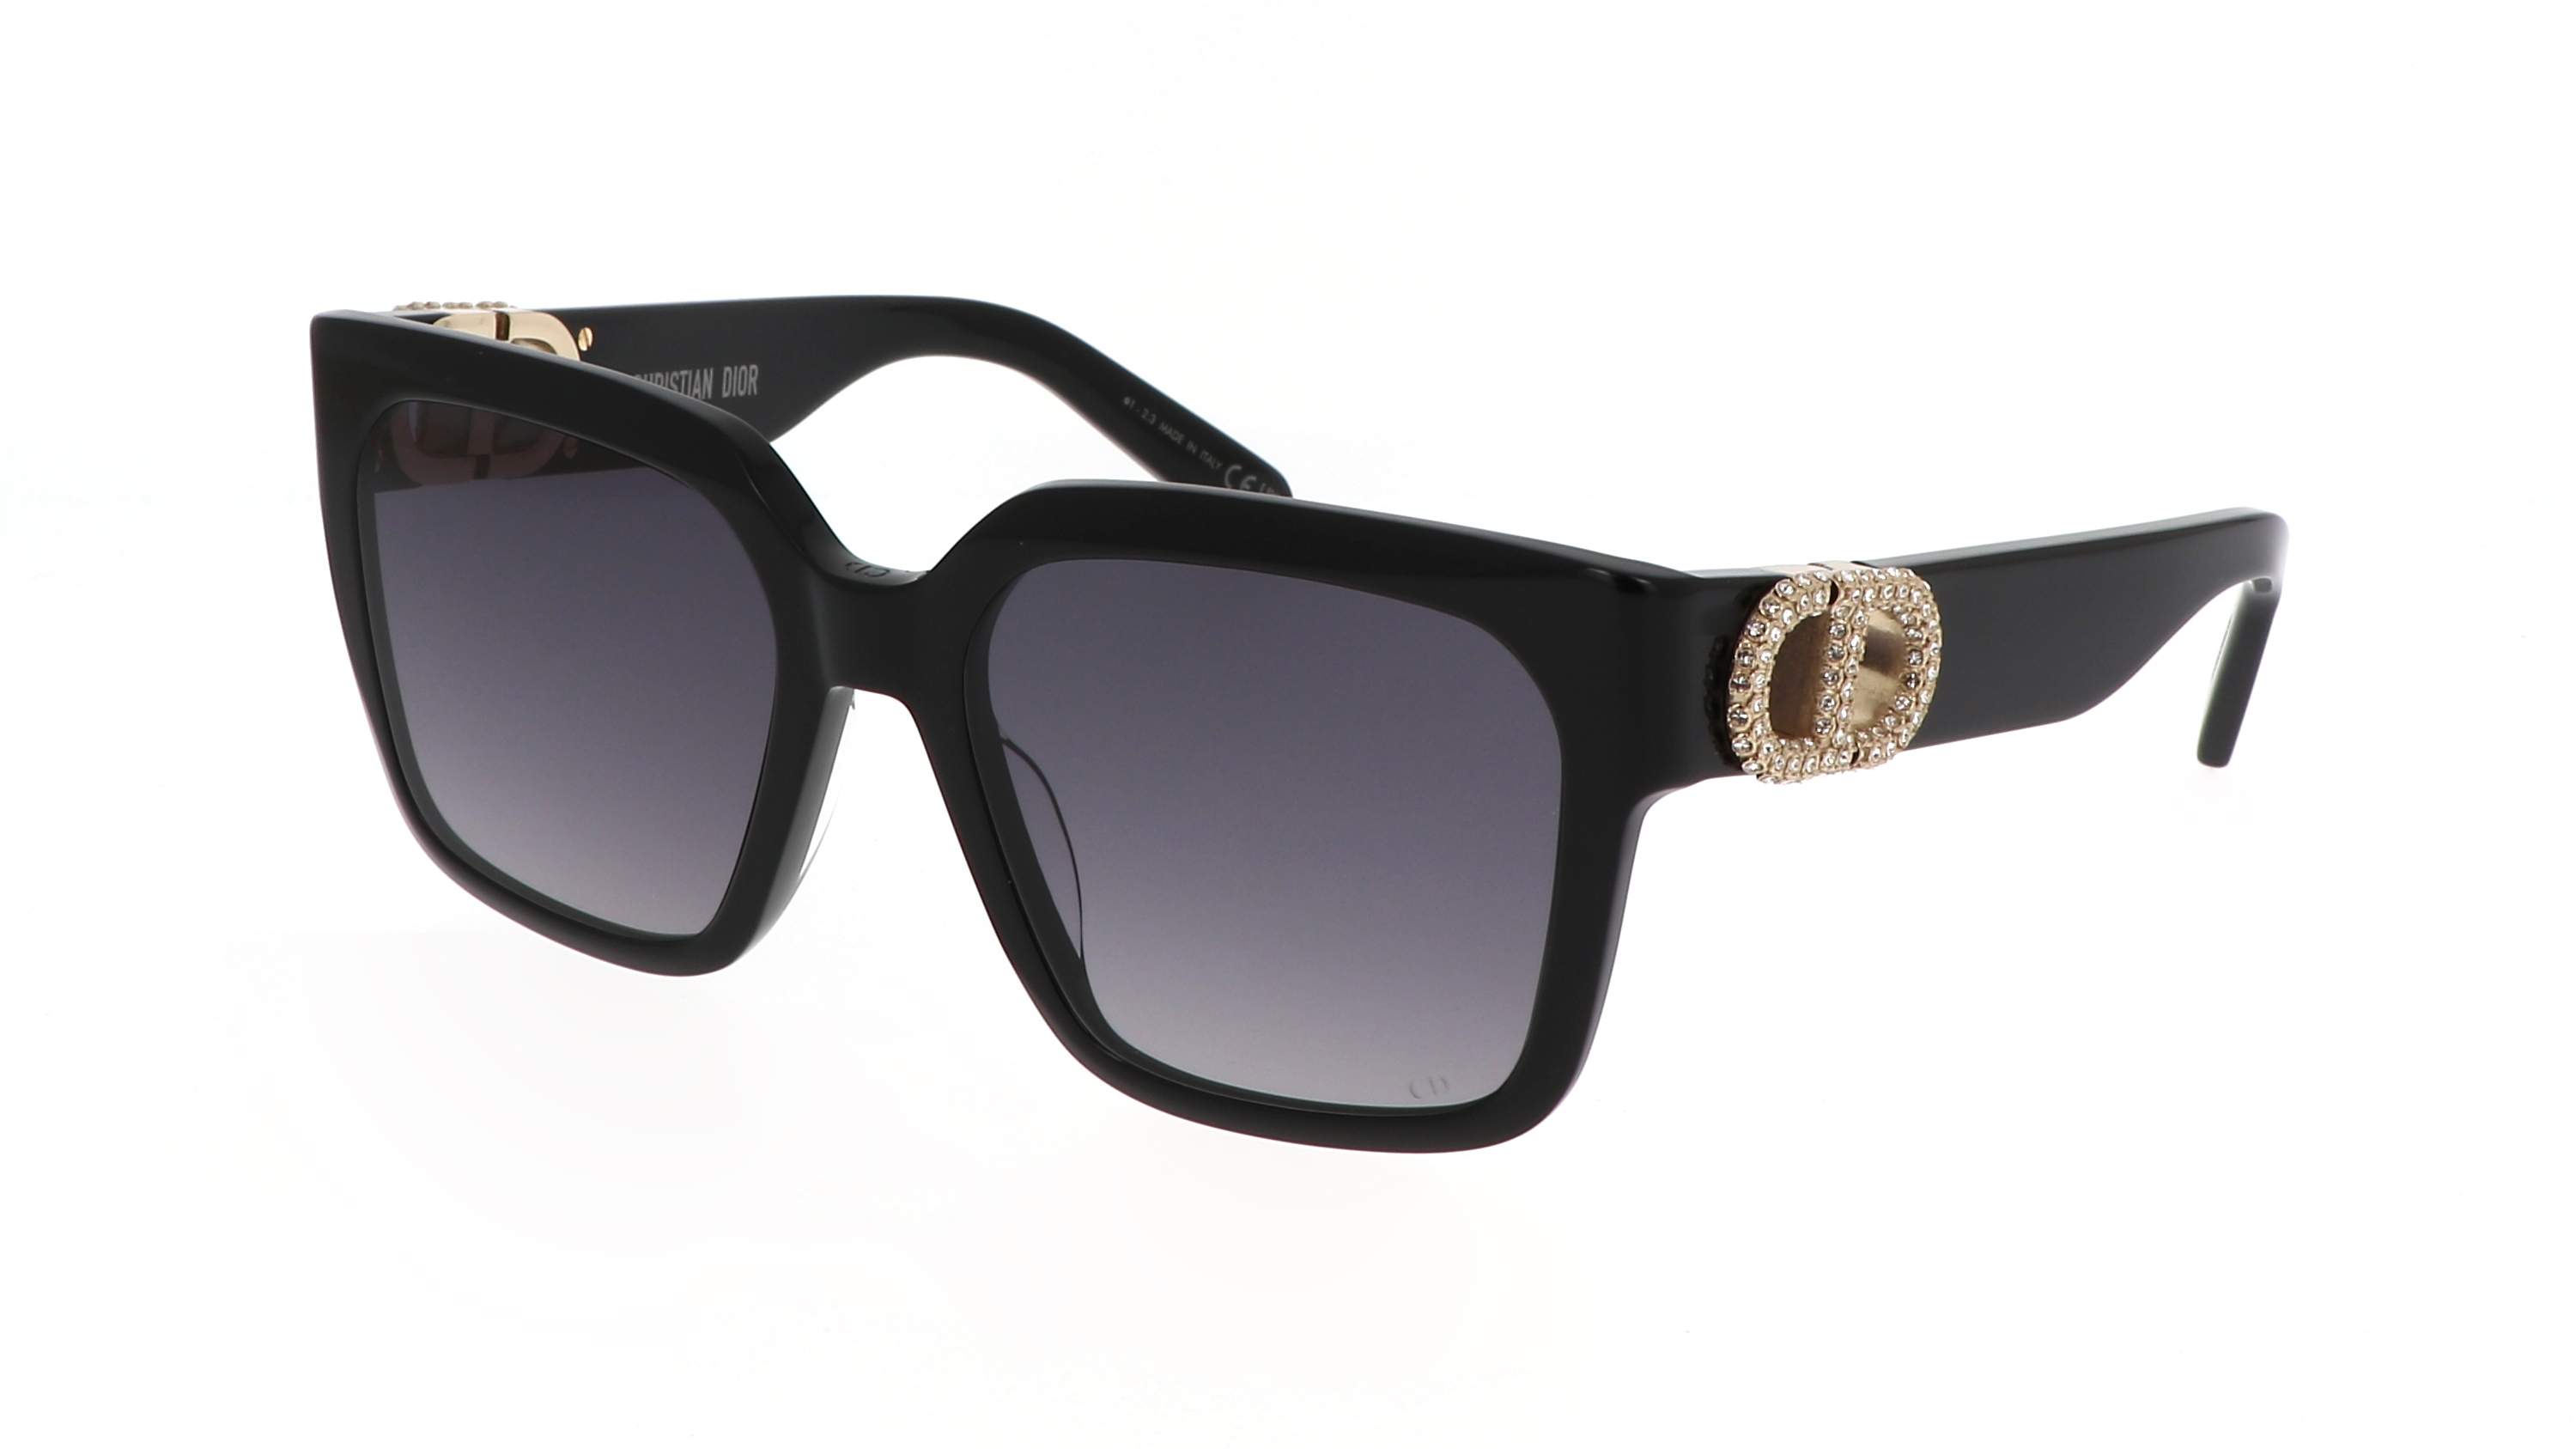 Sunglasses DIOR 30montaigne 30MONTAIGNE S11I 12A1 55-18 Black in stock ...